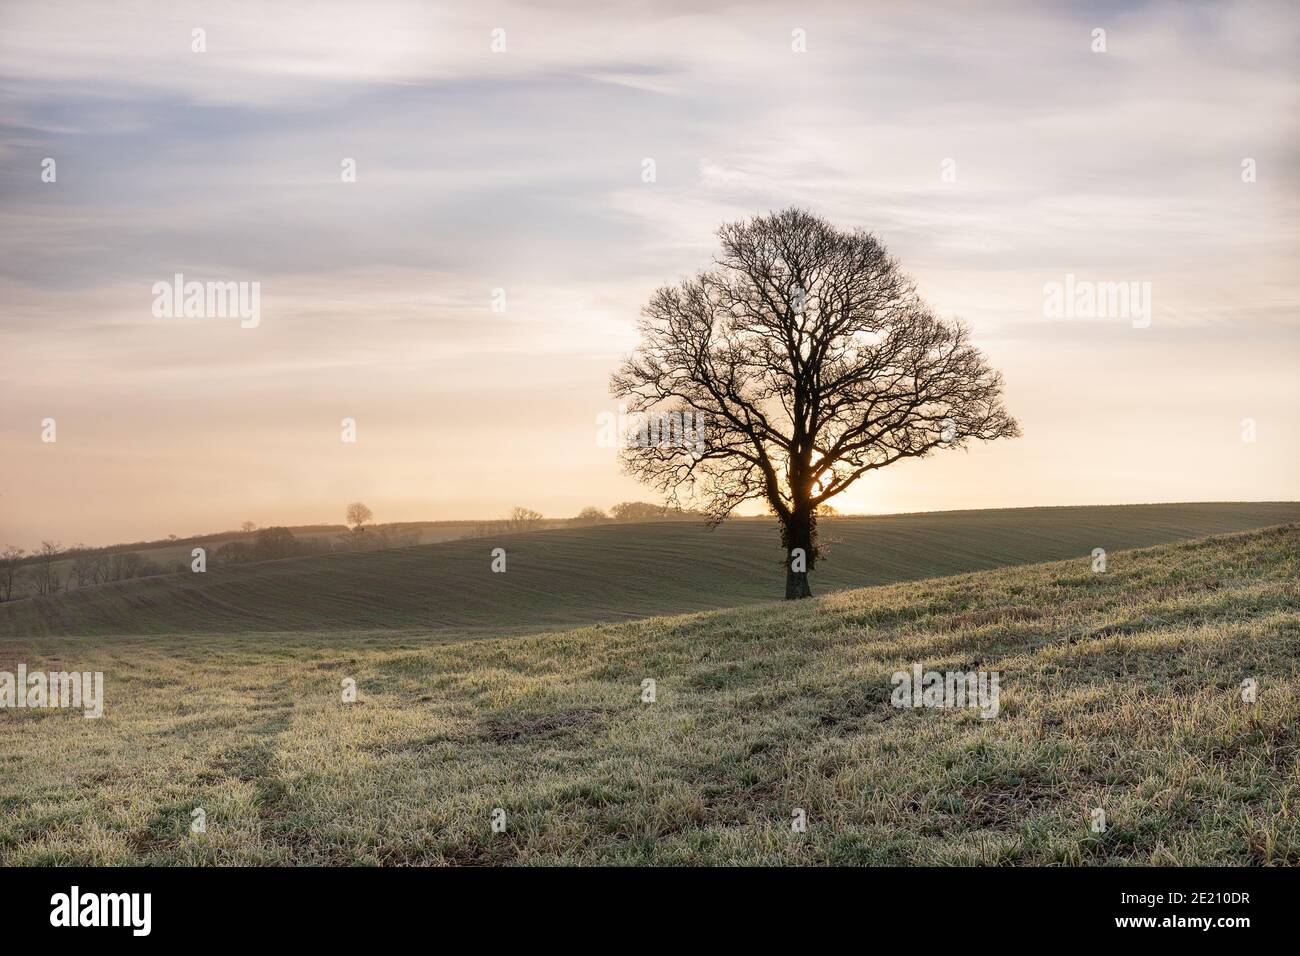 Ein einbunter Baum in einem frostigen Feld, wenn die Sonne aufgeht Stockfoto